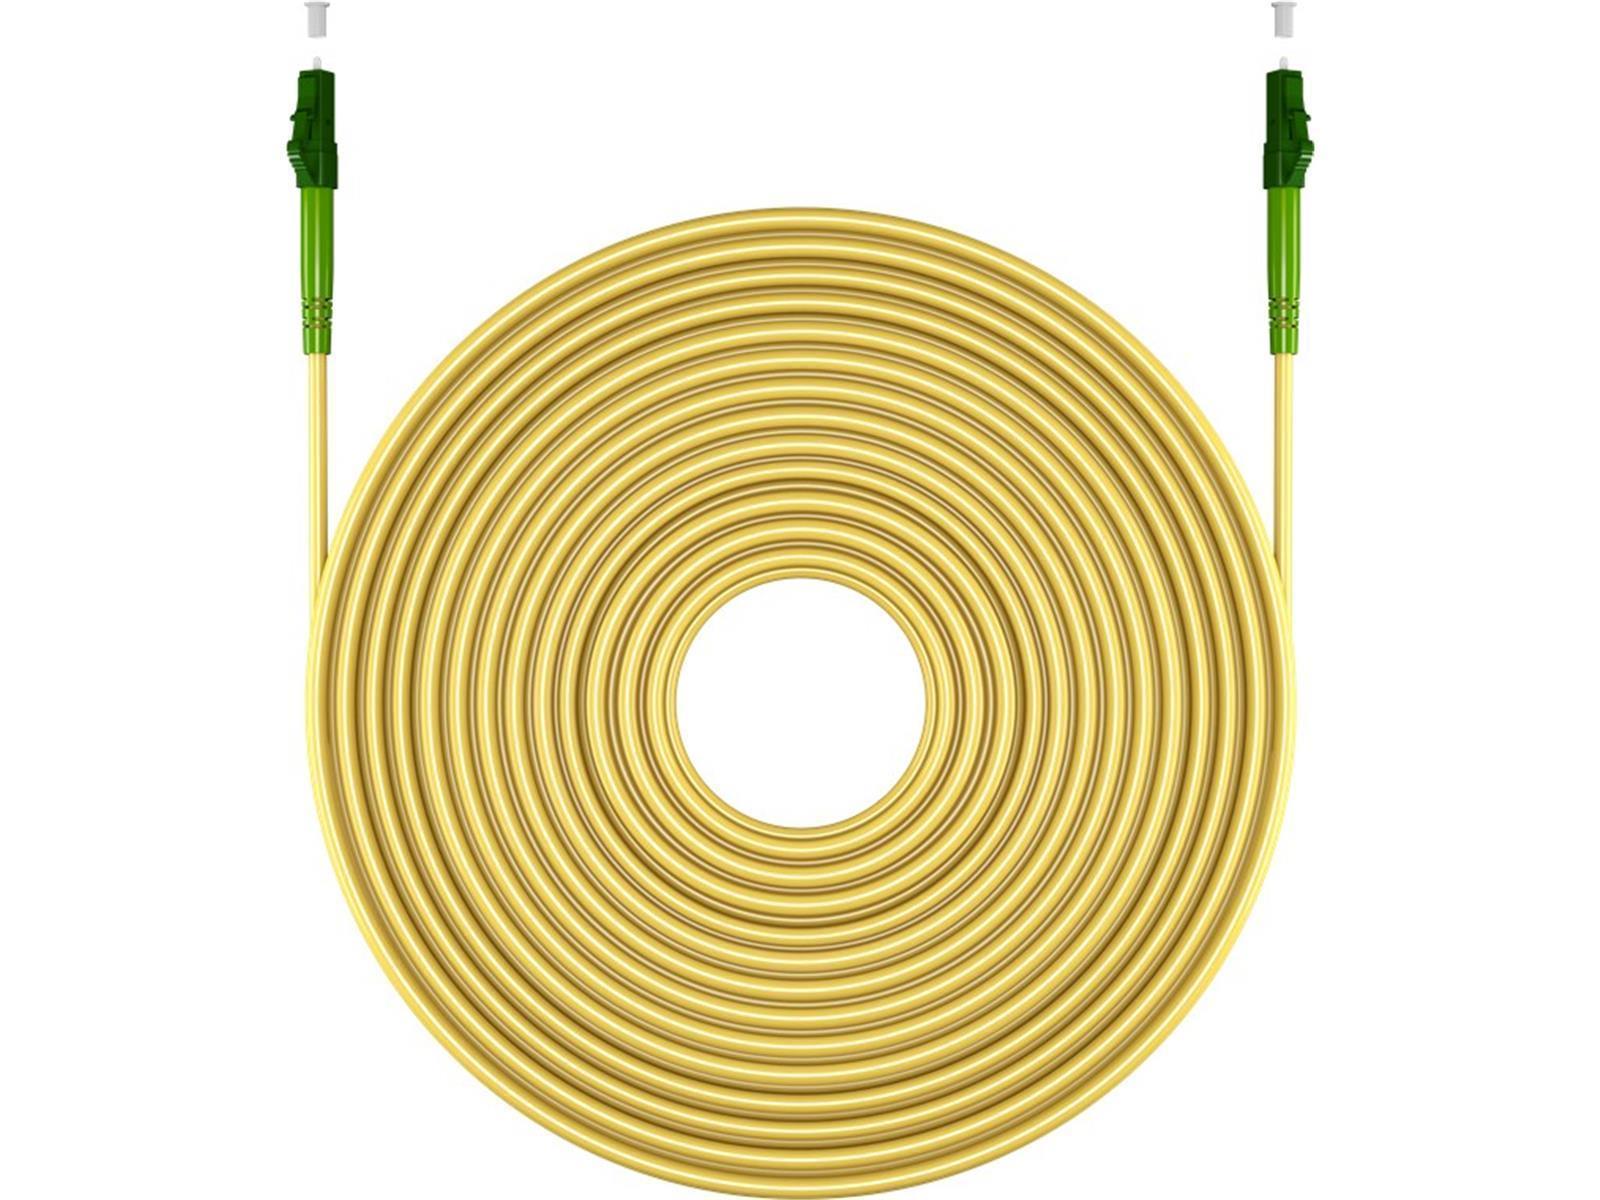 Glasfaserkabel (FTTH), Singlemode (OS2) Yellow, (Simplex), 25 m